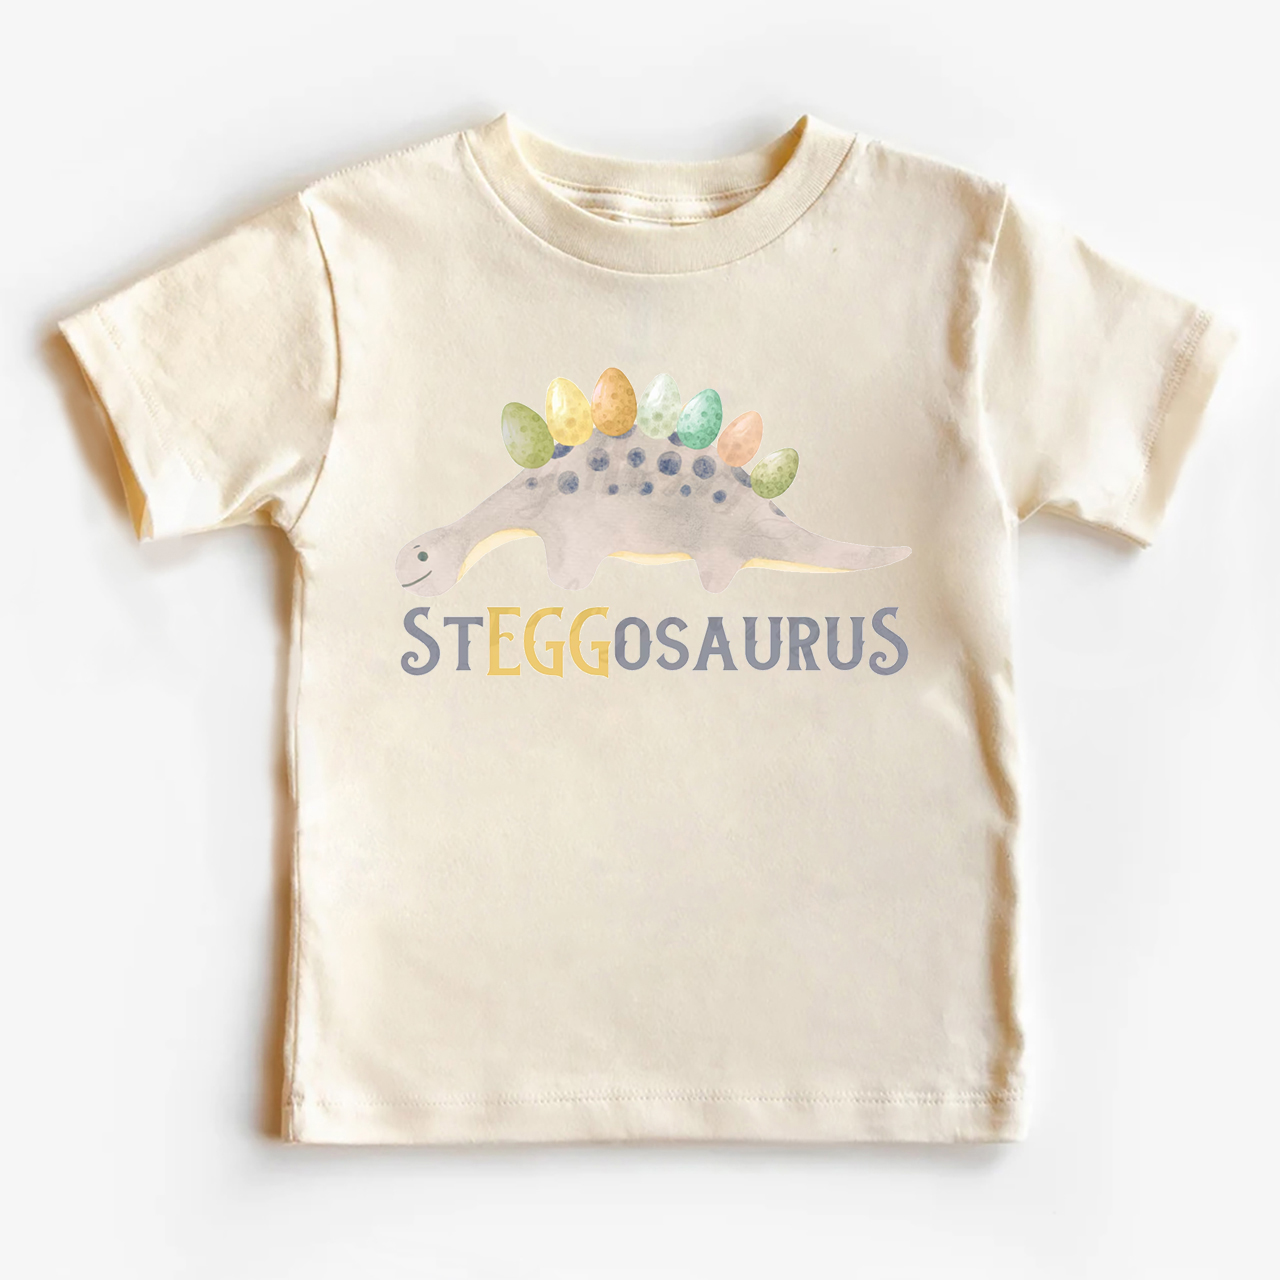 Steggosaurus Easter Toddler Shirt